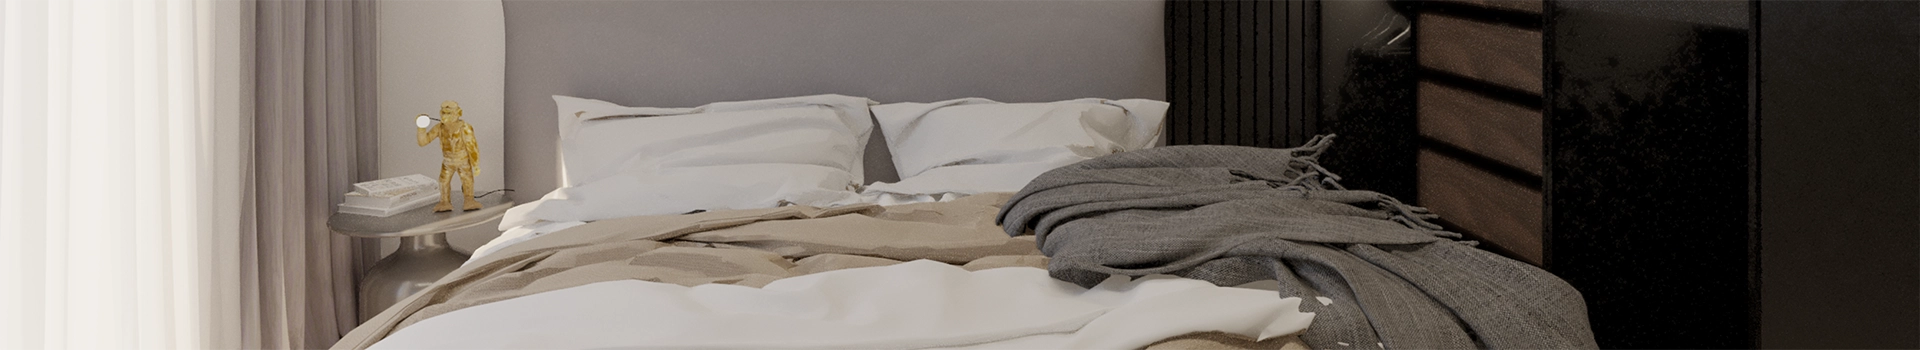 białe poduszki na łóżku